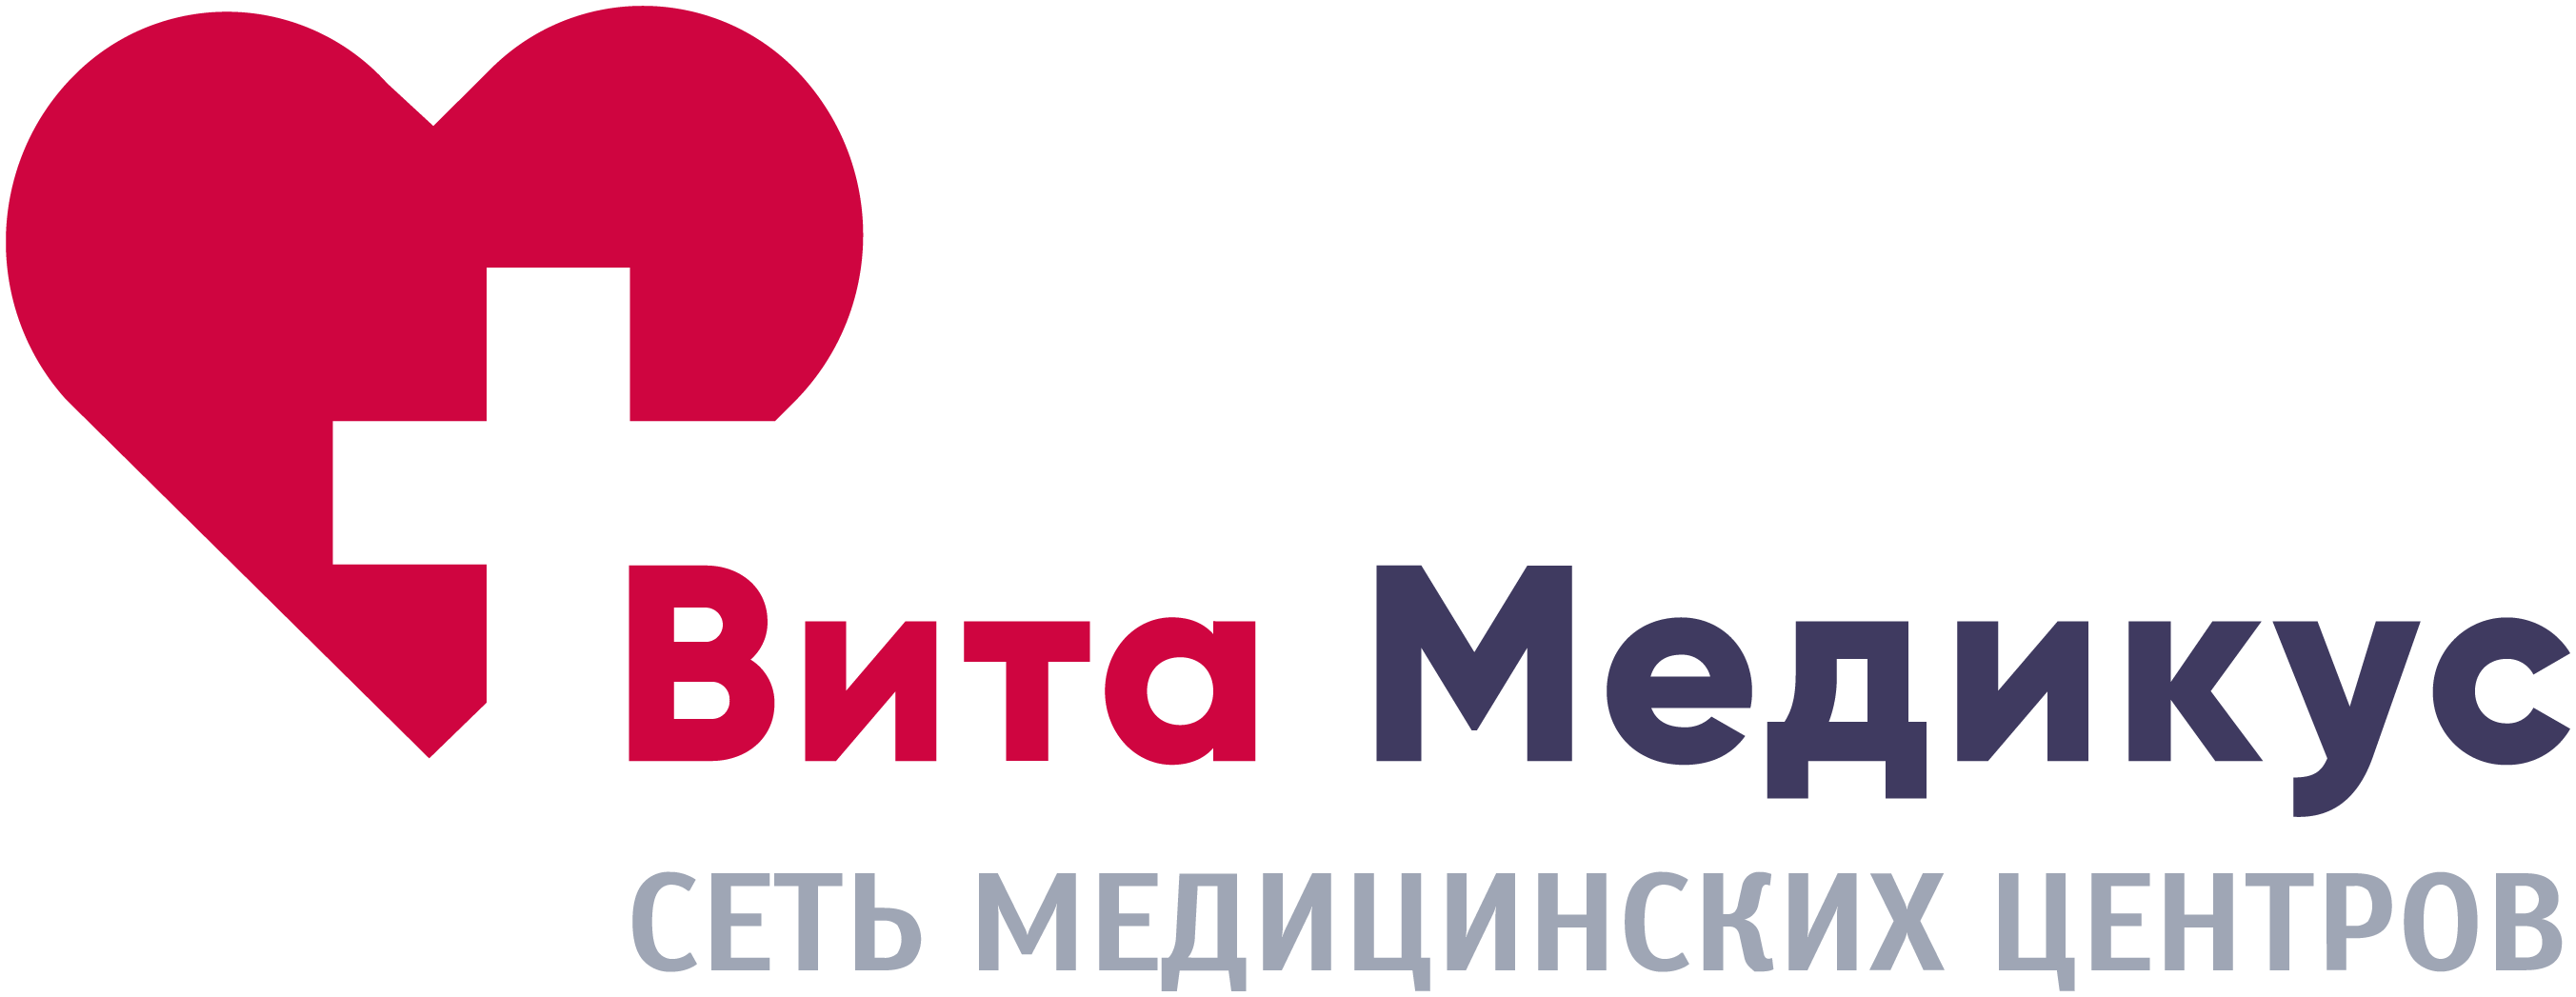 Вита Медикус на Ольховой - логотип